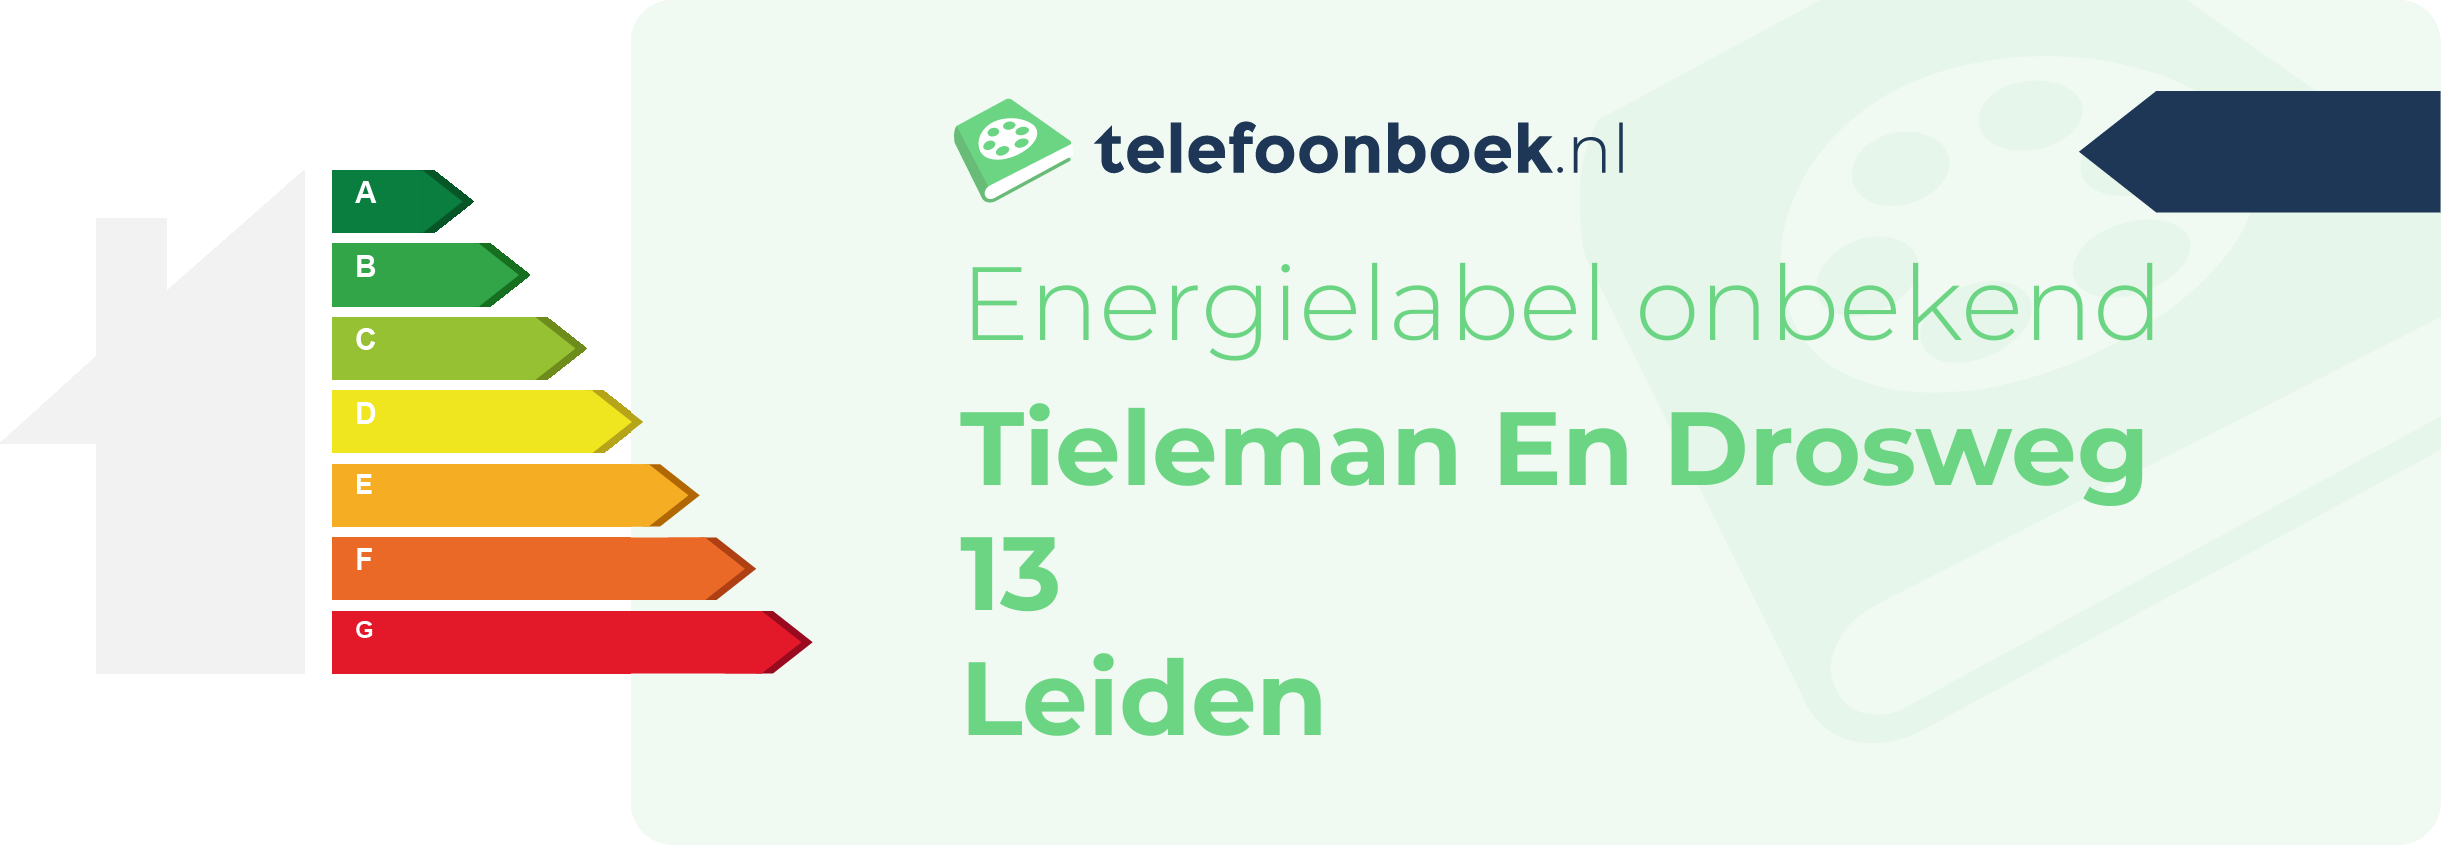 Energielabel Tieleman En Drosweg 13 Leiden